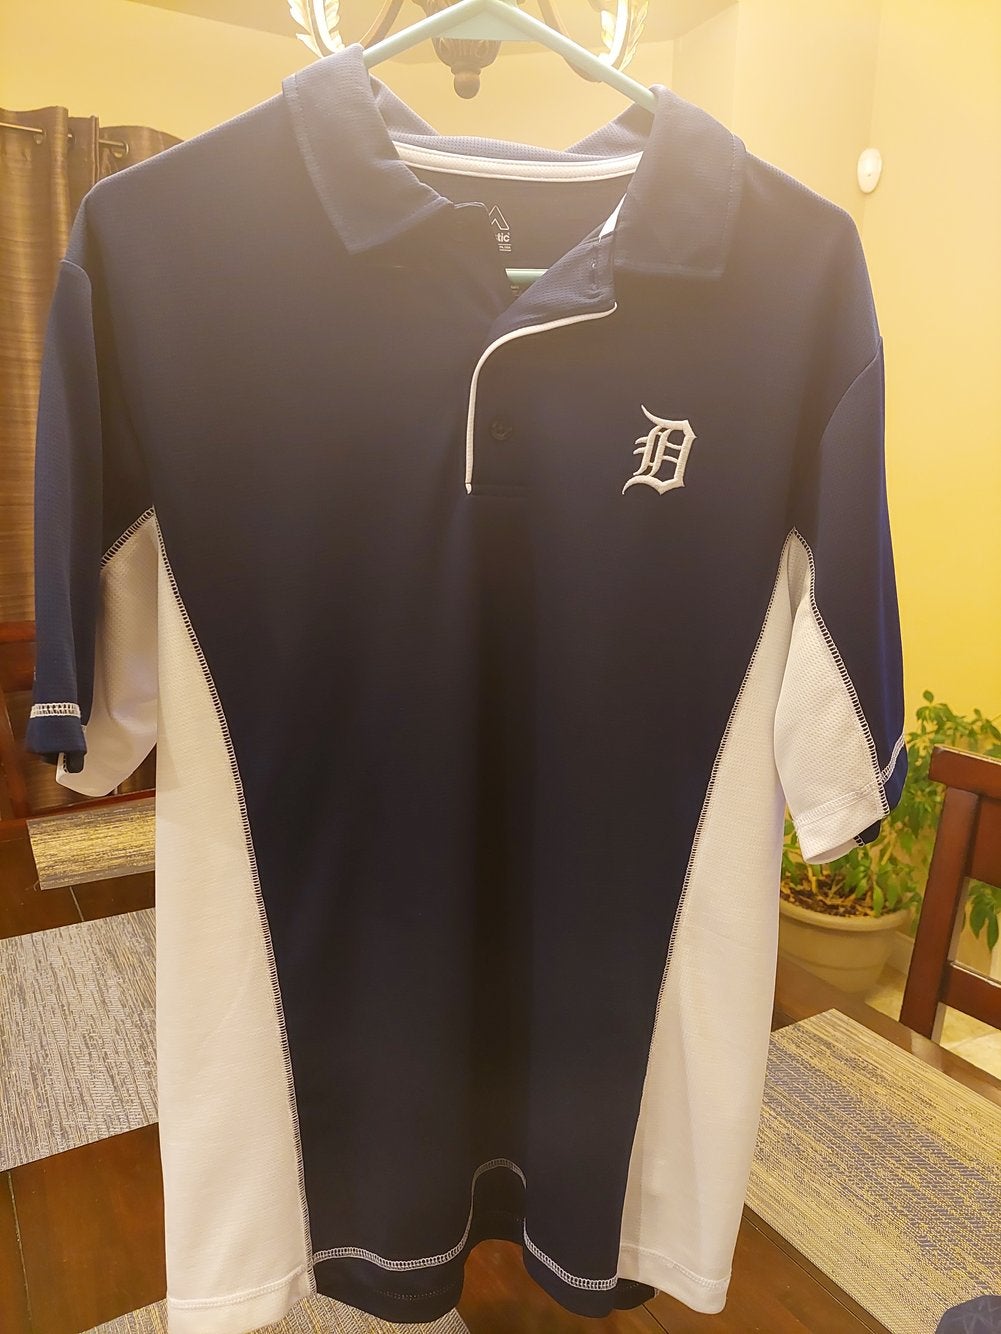 Detroit Tigers Merchandise, Tigers Apparel, Jerseys & Gear